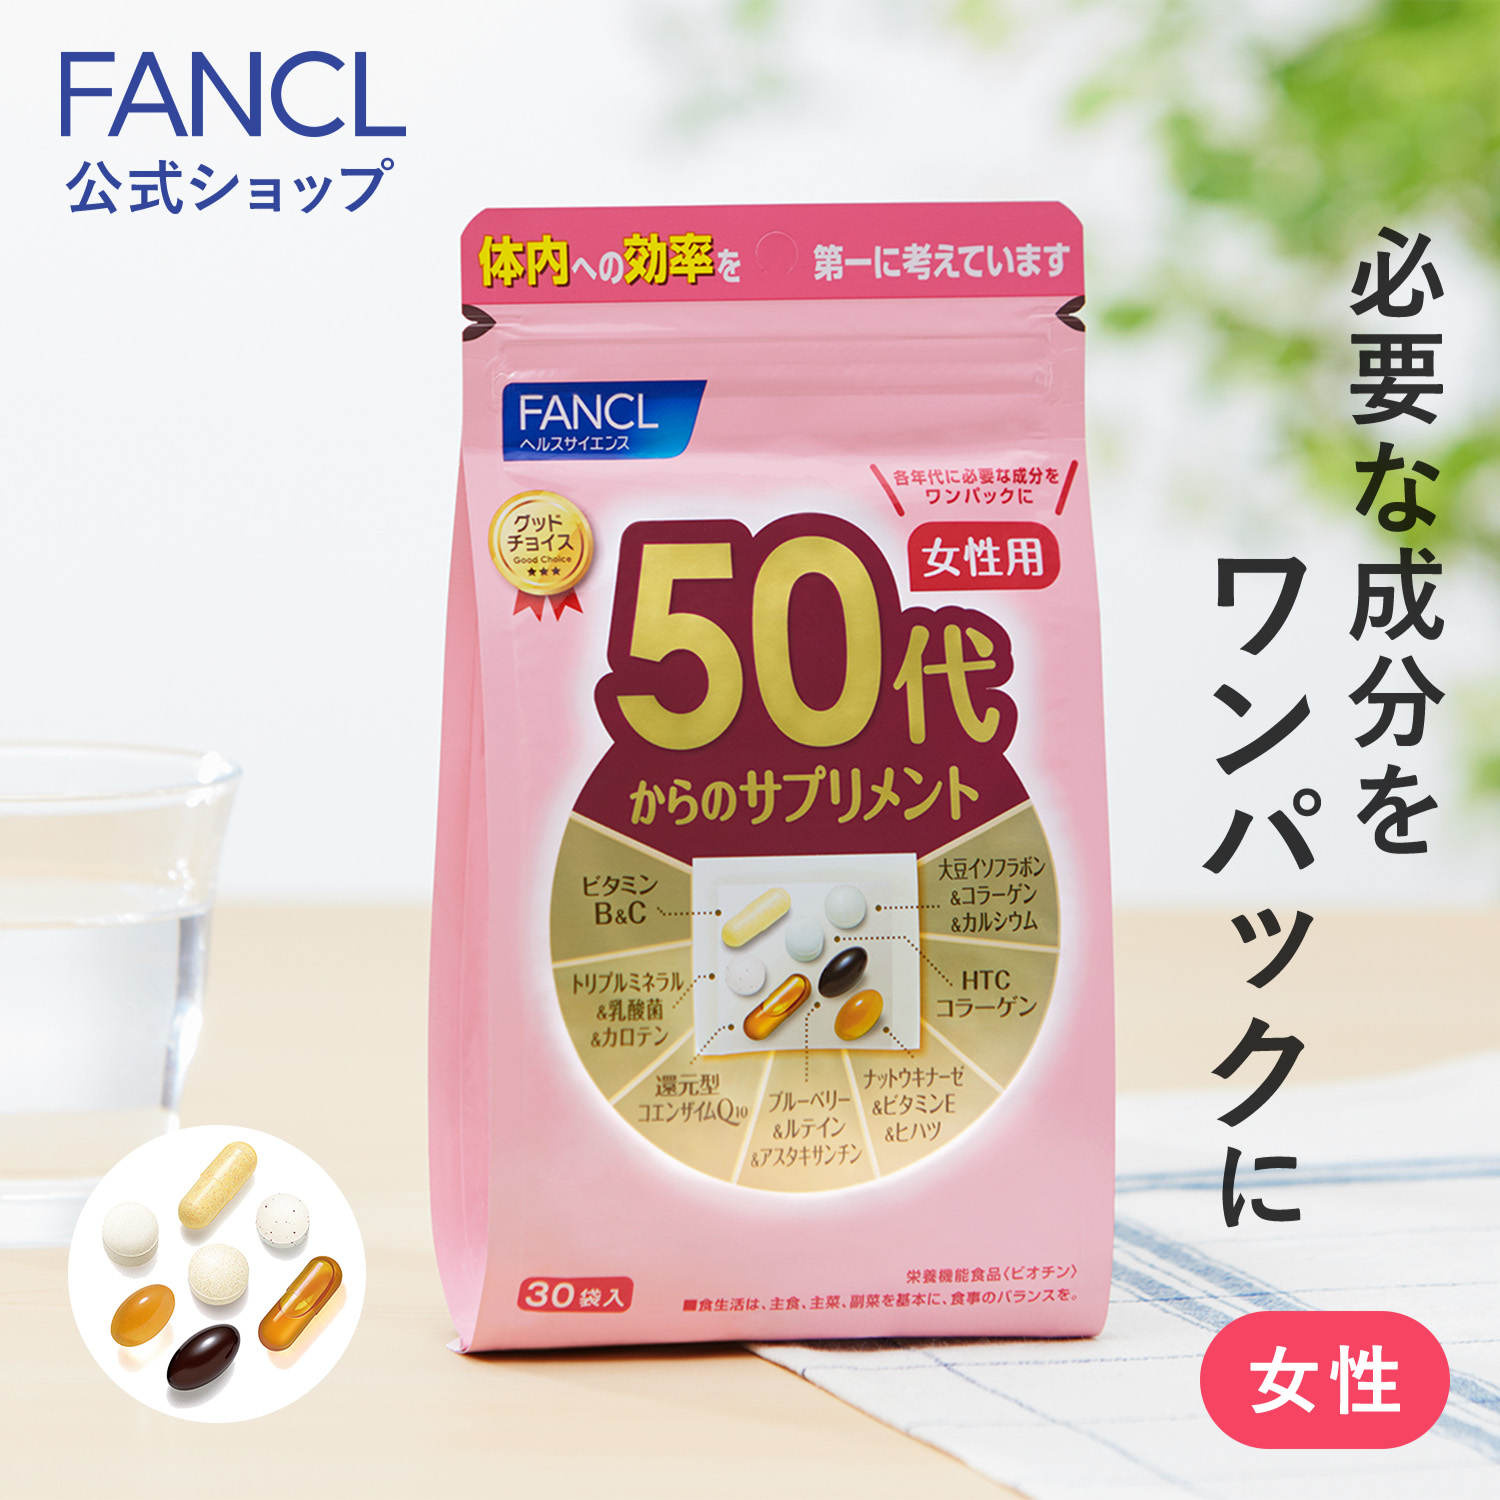 【セット】 ファンケル 50代からのサプリメント 女性用 (30袋入) x 3セット リメント